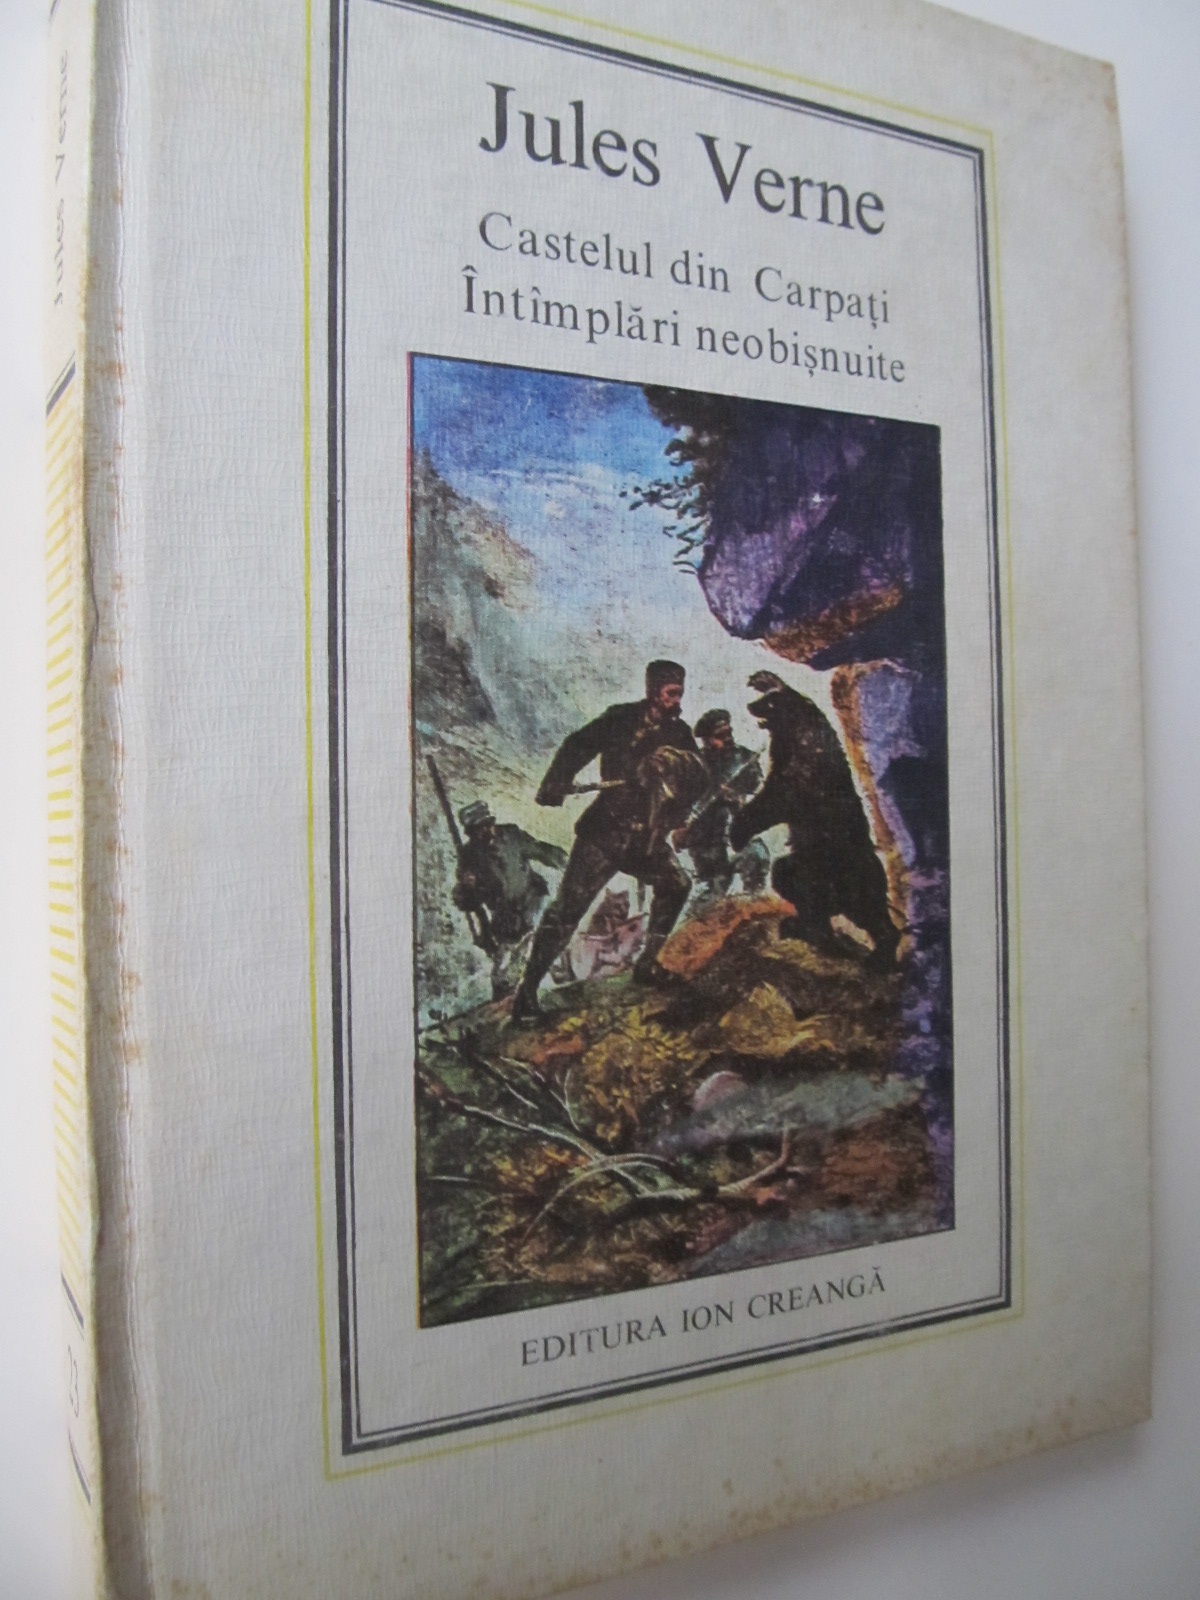 Castelul din Carpati - Intamplari neobisnuite (23) - Jules Verne | Detalii carte